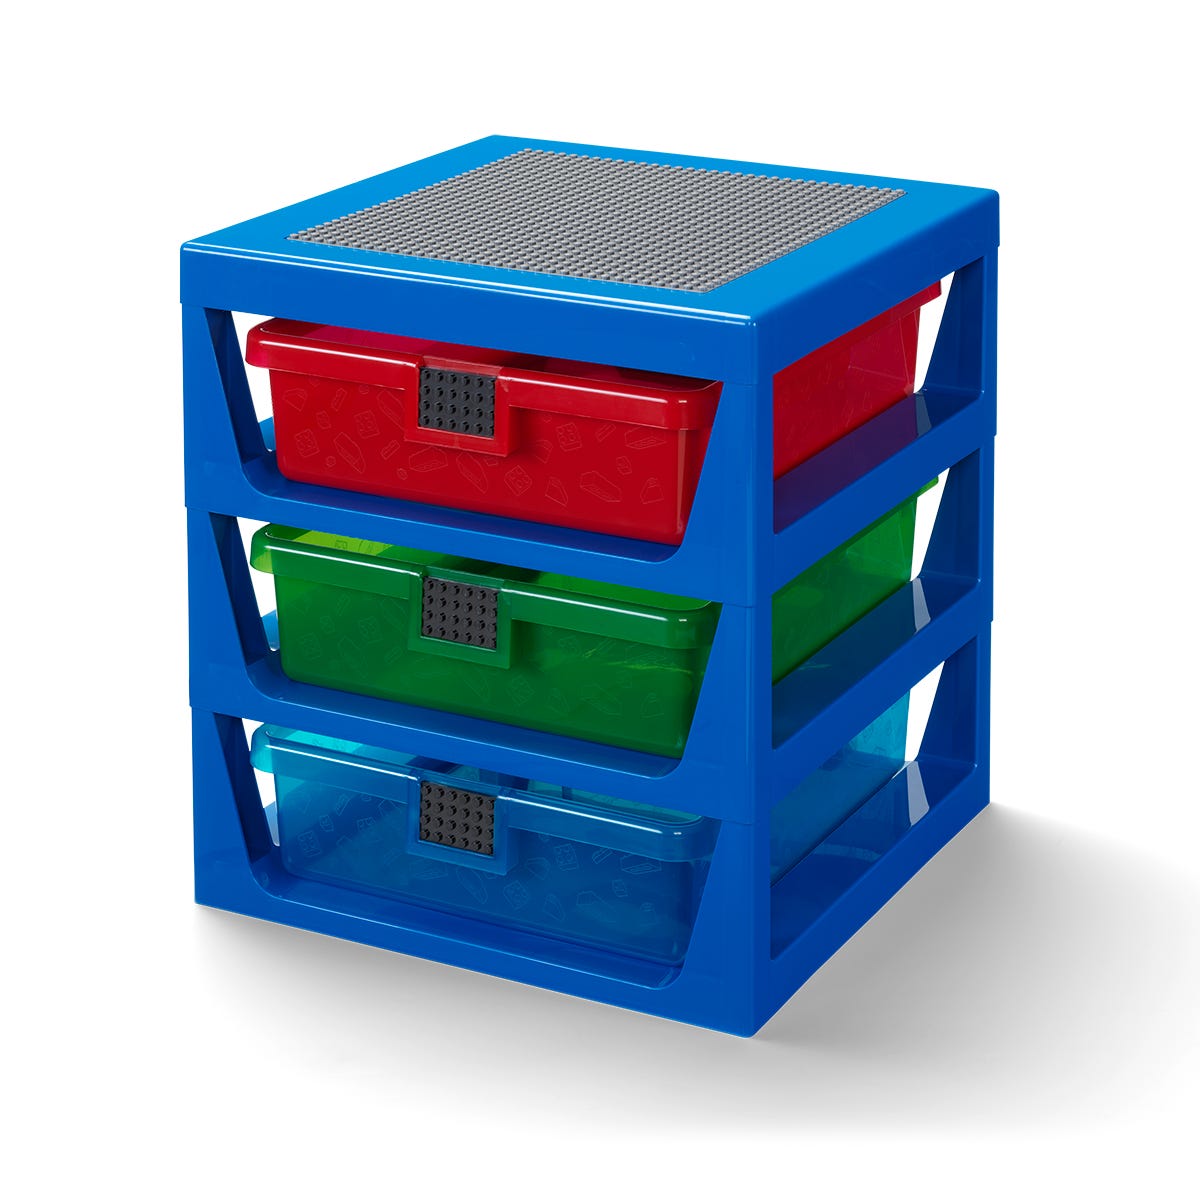 LEGO® Regalsystem in transparentem Blau